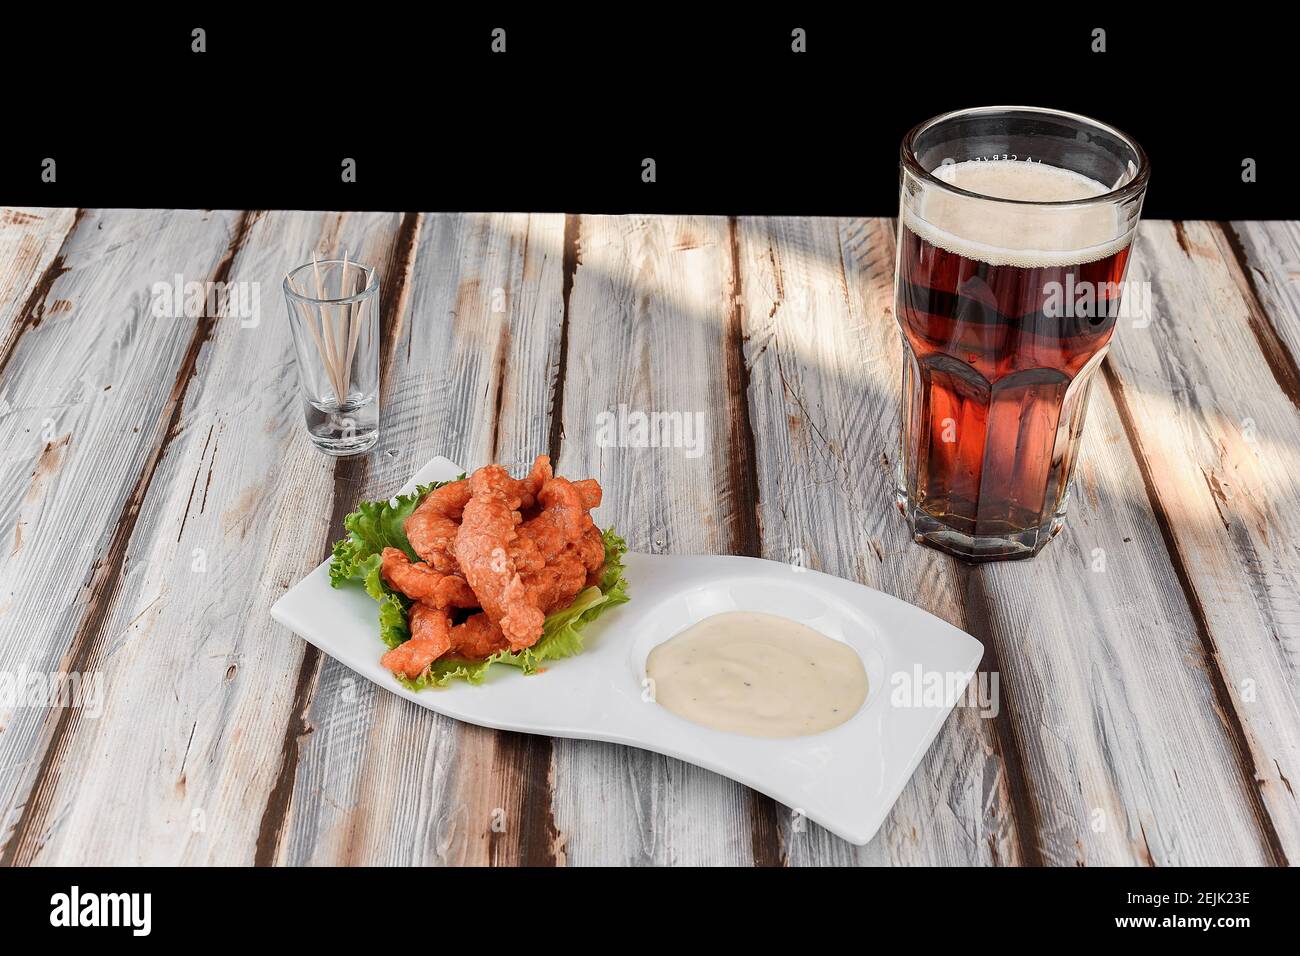 Piatto con ali di pollo con salsa rossa accompagnata da un birra scura Foto Stock